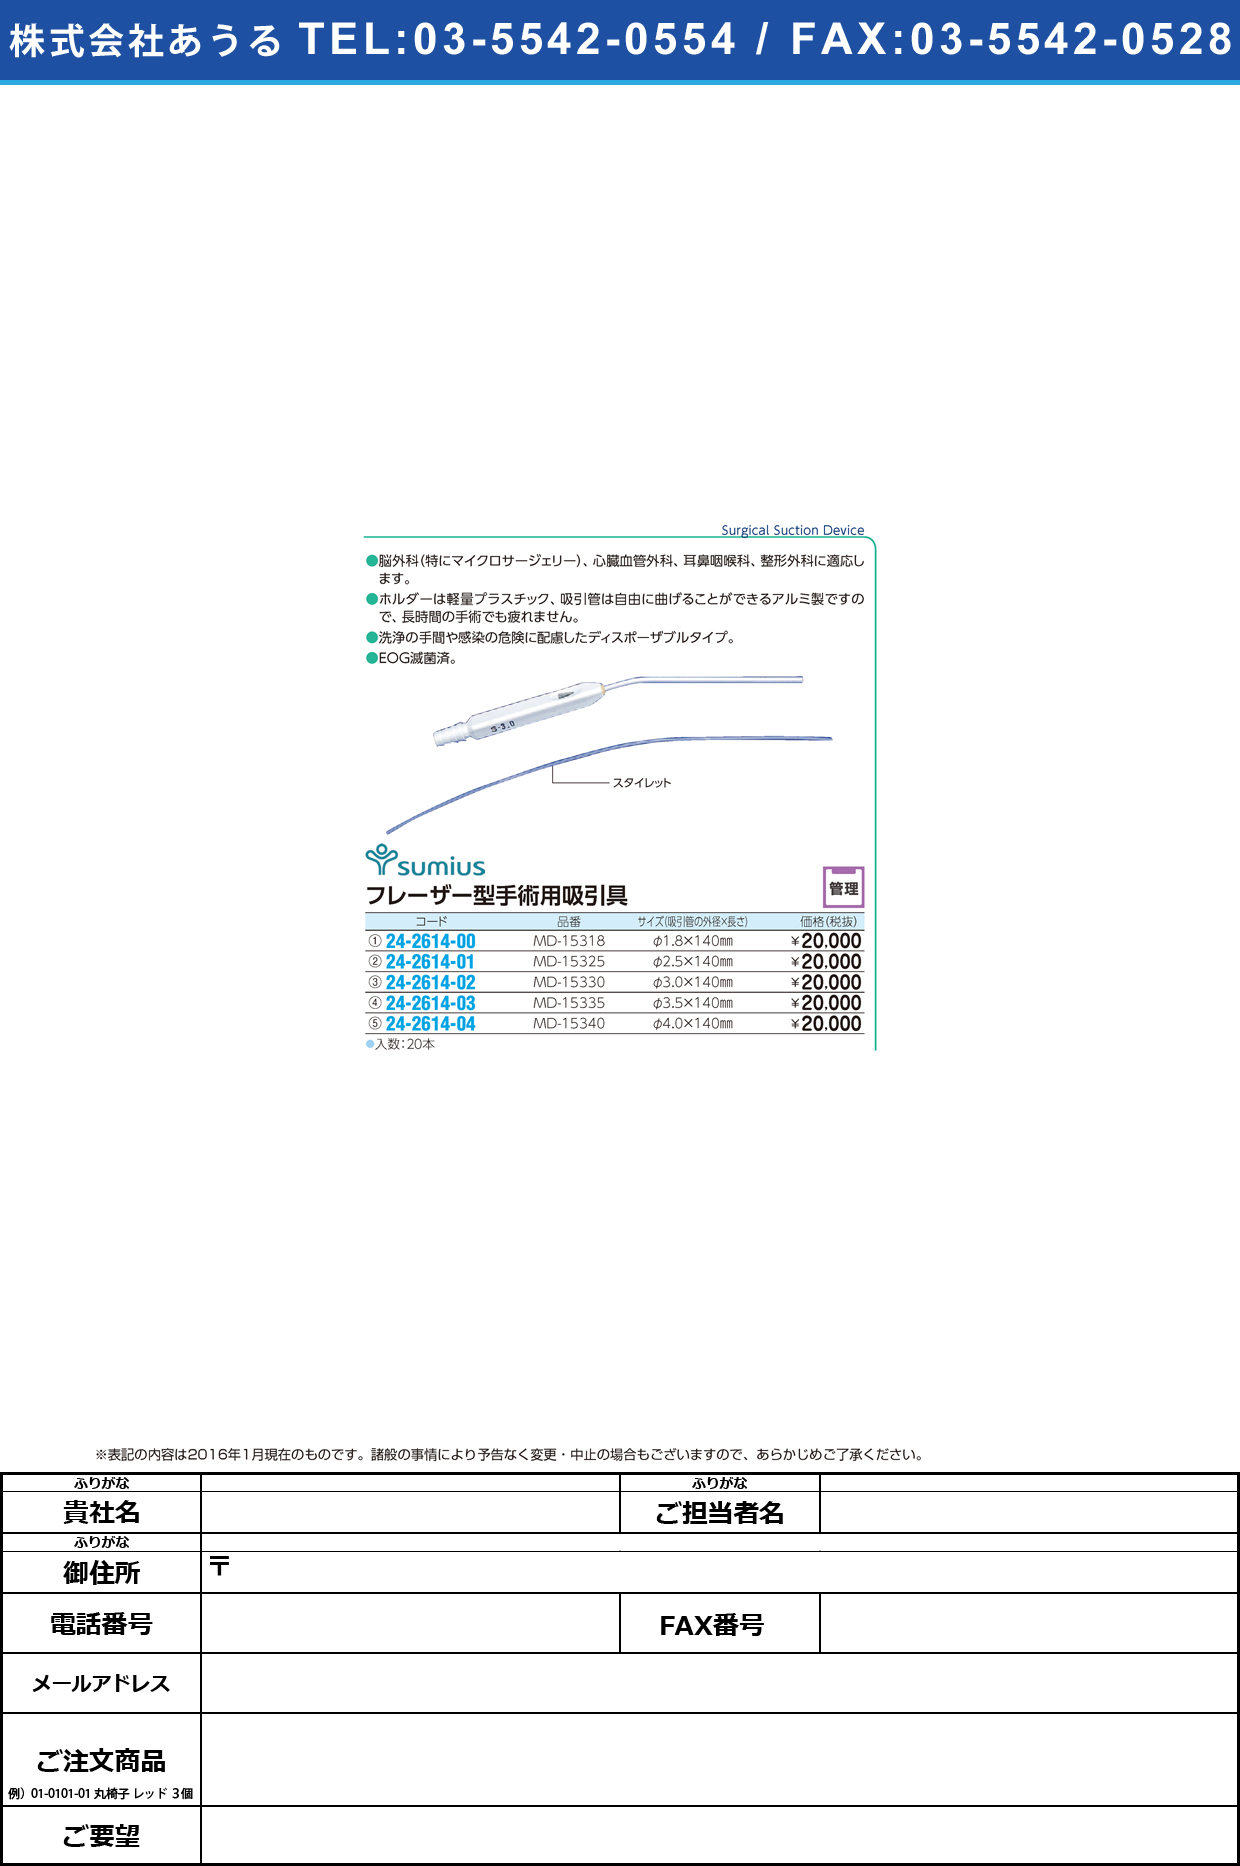 フレーザー型手術用吸引具 ﾌﾚｰｻﾞｰｶﾞﾀｼｭｼﾞｭﾂﾖｳ MD-15340(4.0MM)20ｲﾘ【1箱単位】